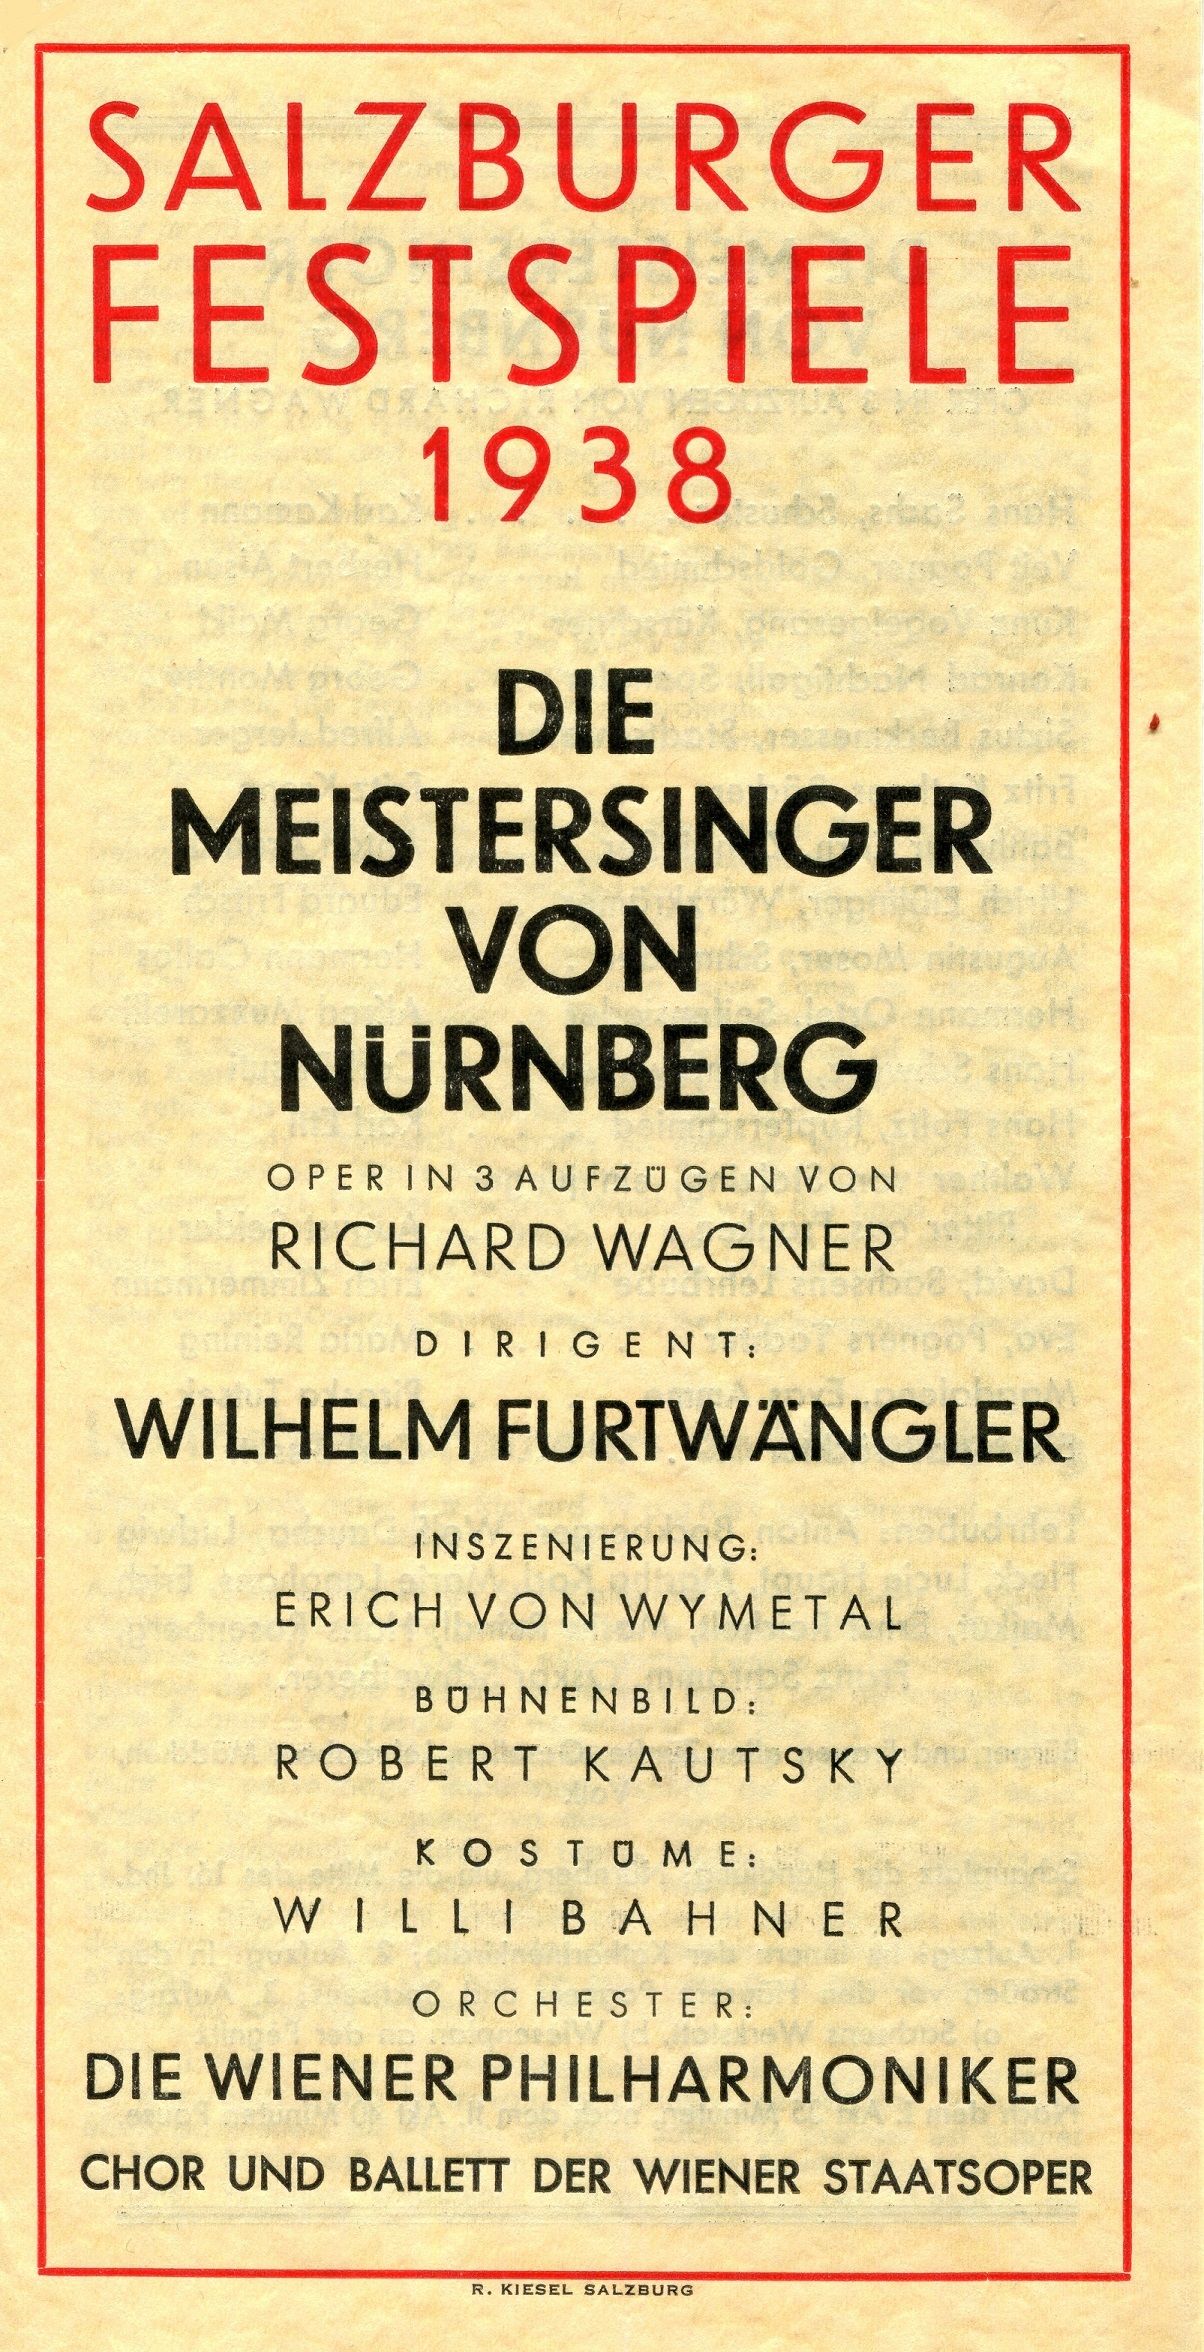 [DIE MEISTERSINGER VON NUREMBERG]: [The Master-Singers of Nuremberg],